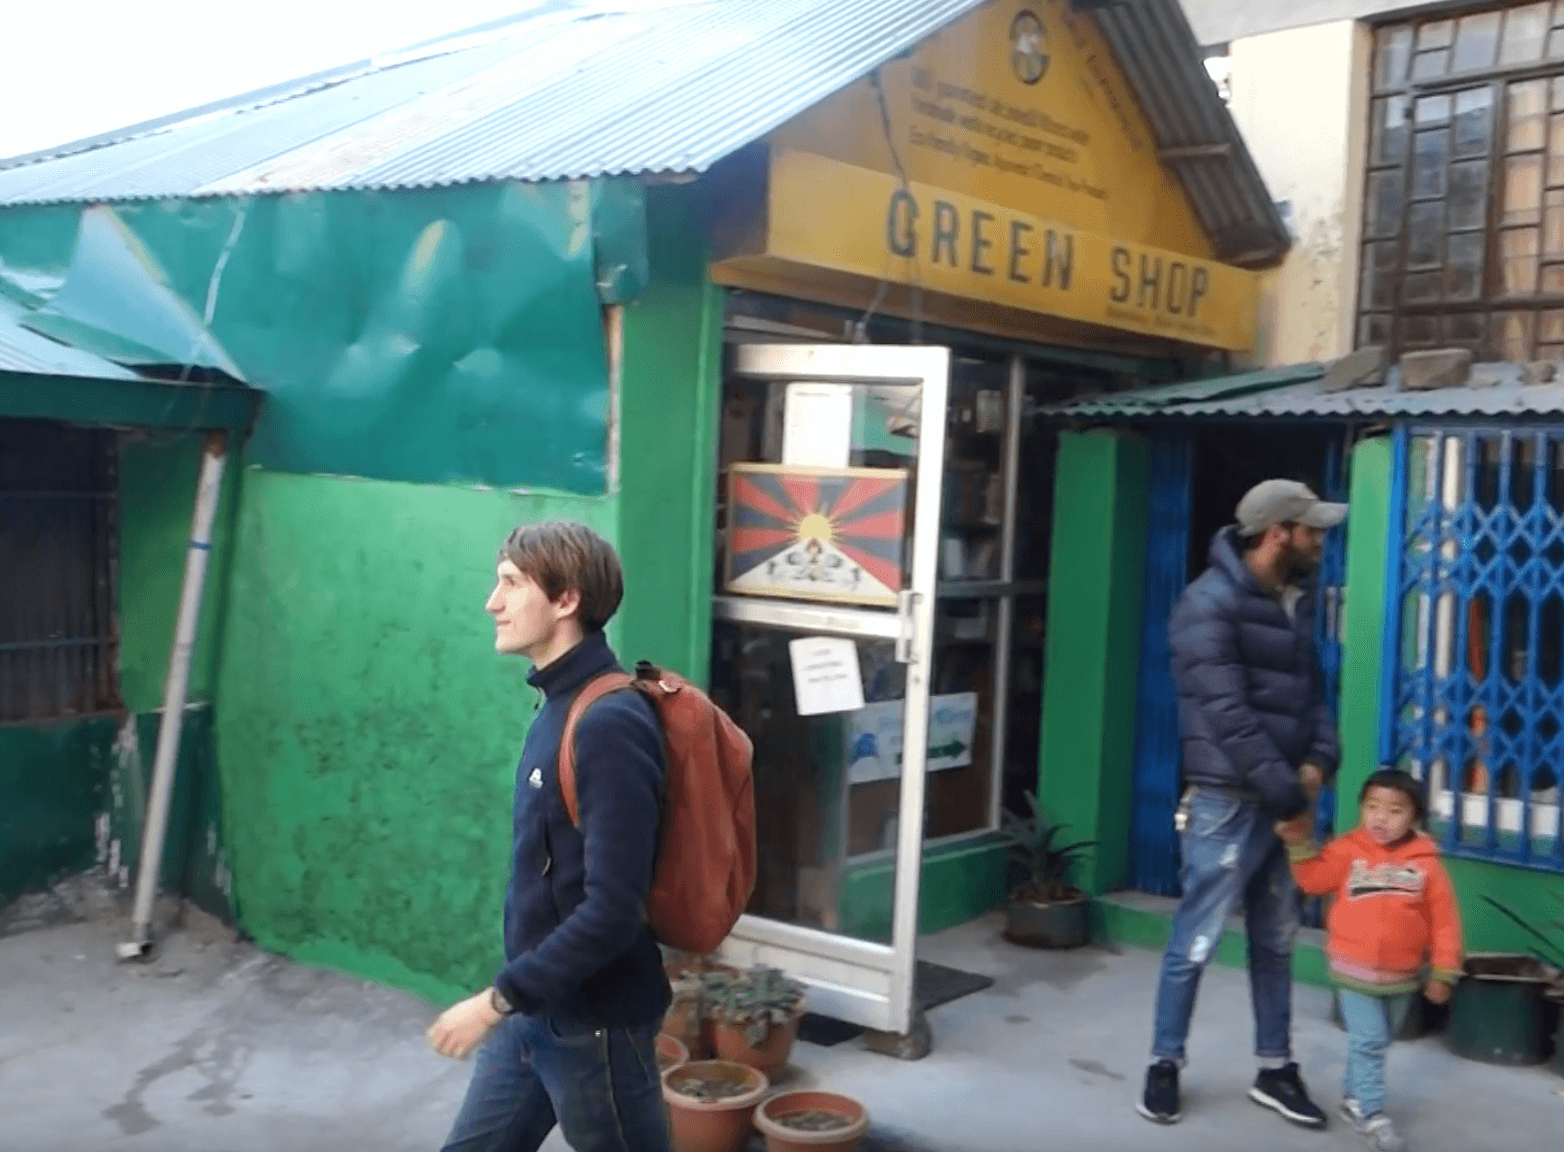 Freiwilliger spaziert vor "Green Shop"